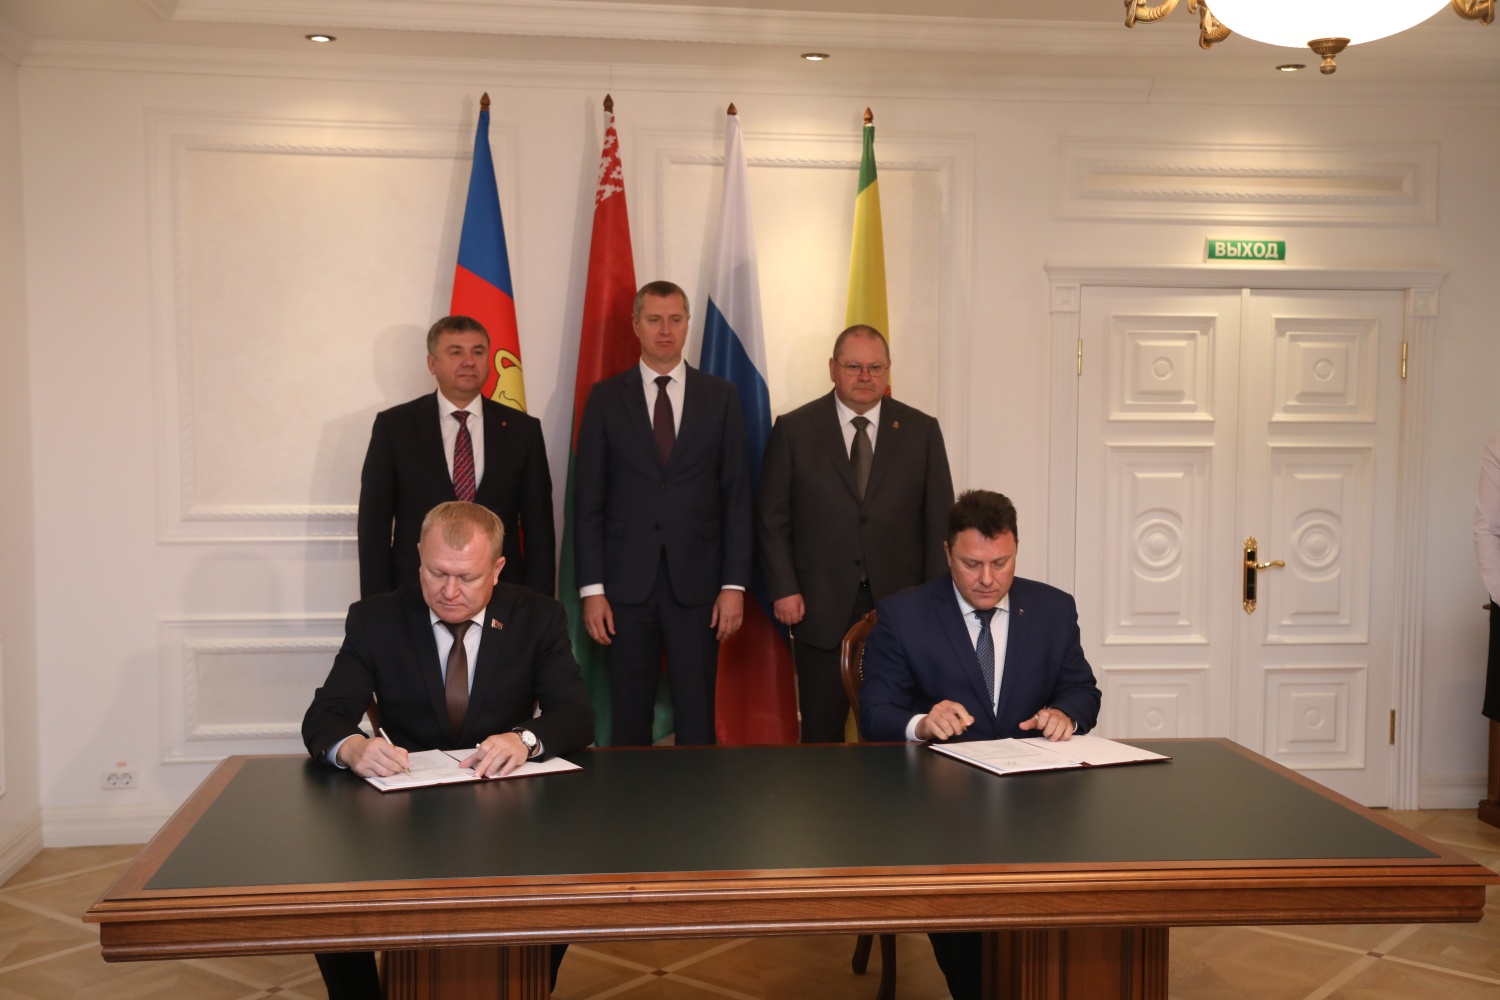 Районы Пензенской и Брестской областей подписали соглашение и план мероприятий по сотрудничеству